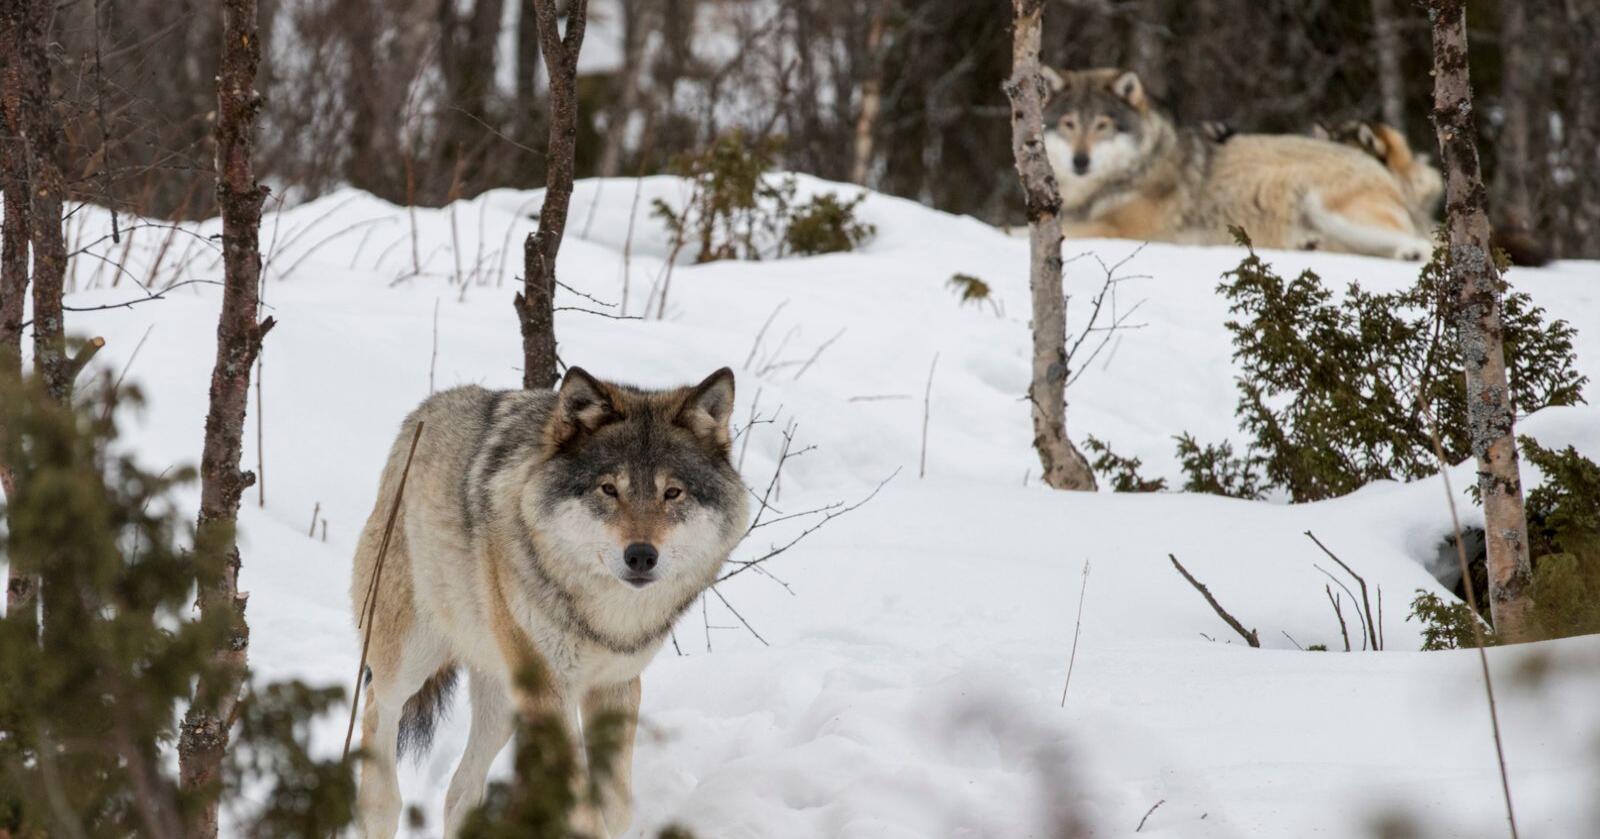 Arbeiderpartiet og Sosialistisk Venstreparti ønsker ikke å senke bestandsmålet for rovdyr i Norge. Foto: Heiko Junge / NTB